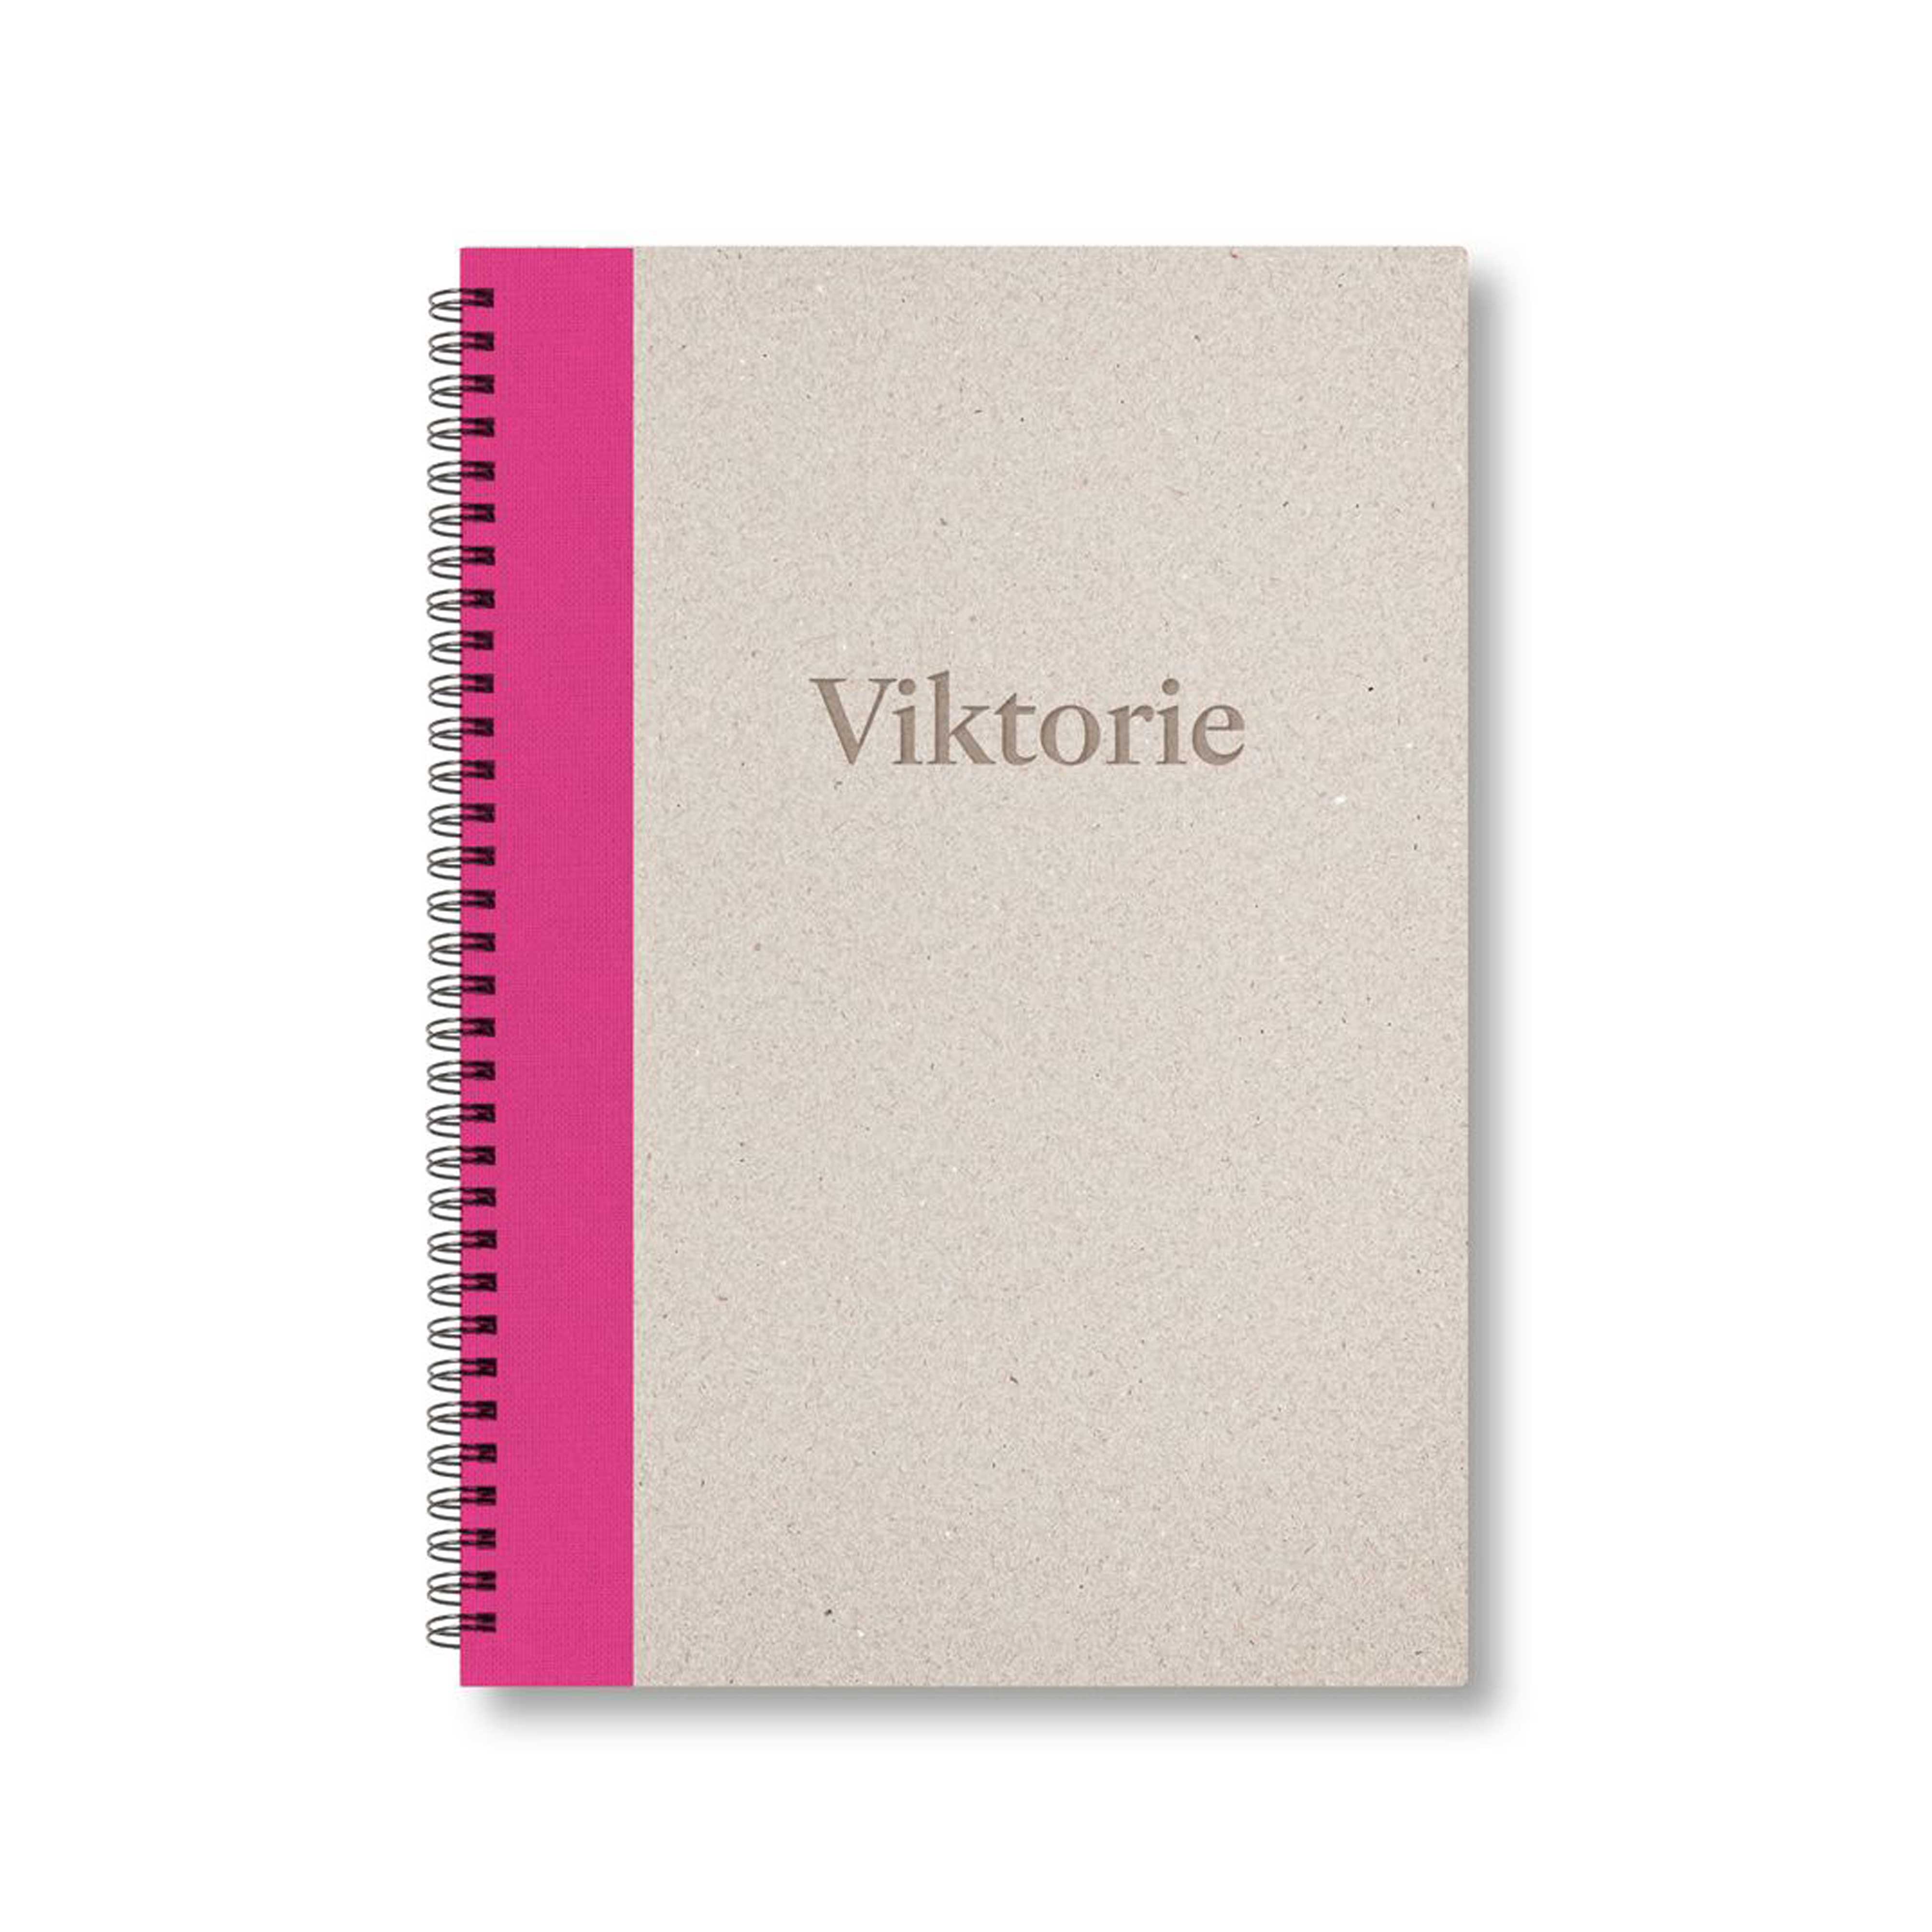 BOBO Zápisník, B5, čistý, růžový, konfiguruj si obálku